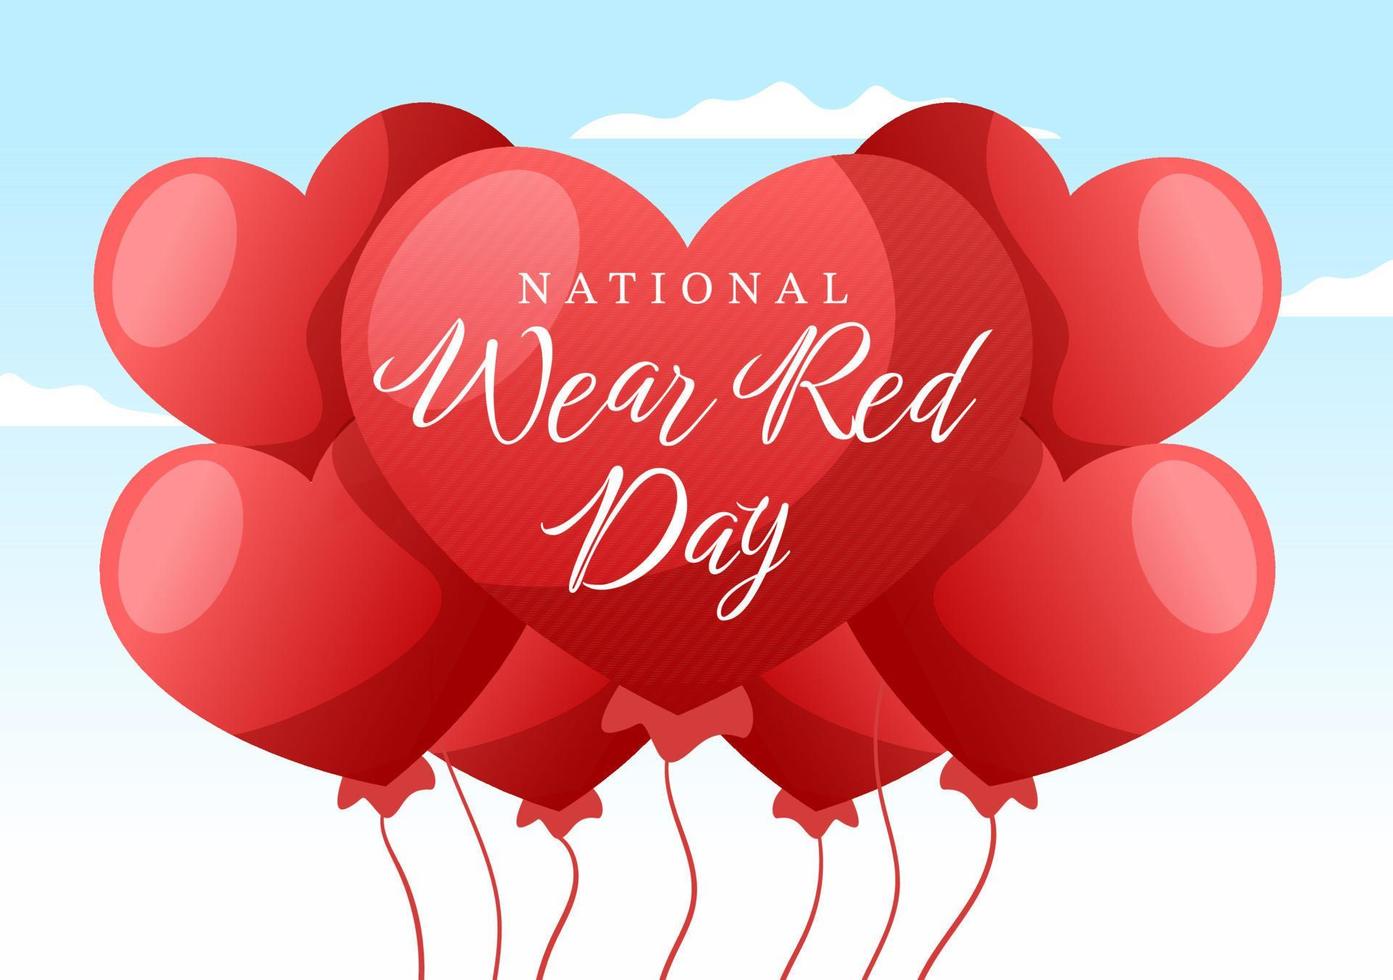 día nacional de uso rojo el 7 de febrero plantilla dibujada a mano ilustración plana de dibujos animados para informar el diseño de enfermedades cardíacas de las mujeres vector